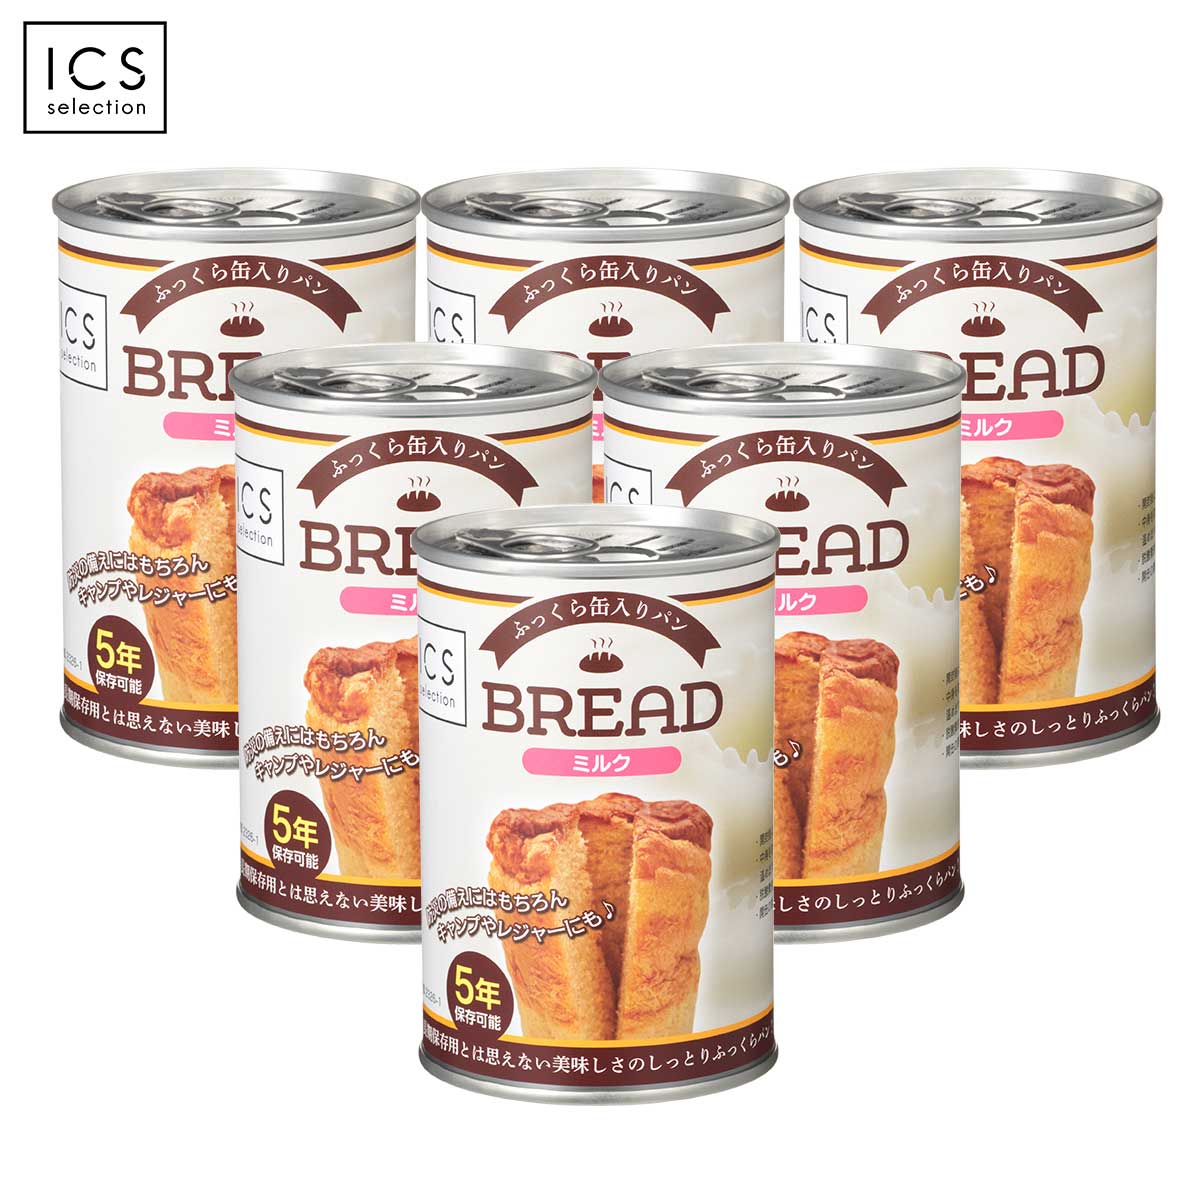 5年保存缶パン ミルク味ブレッド 6